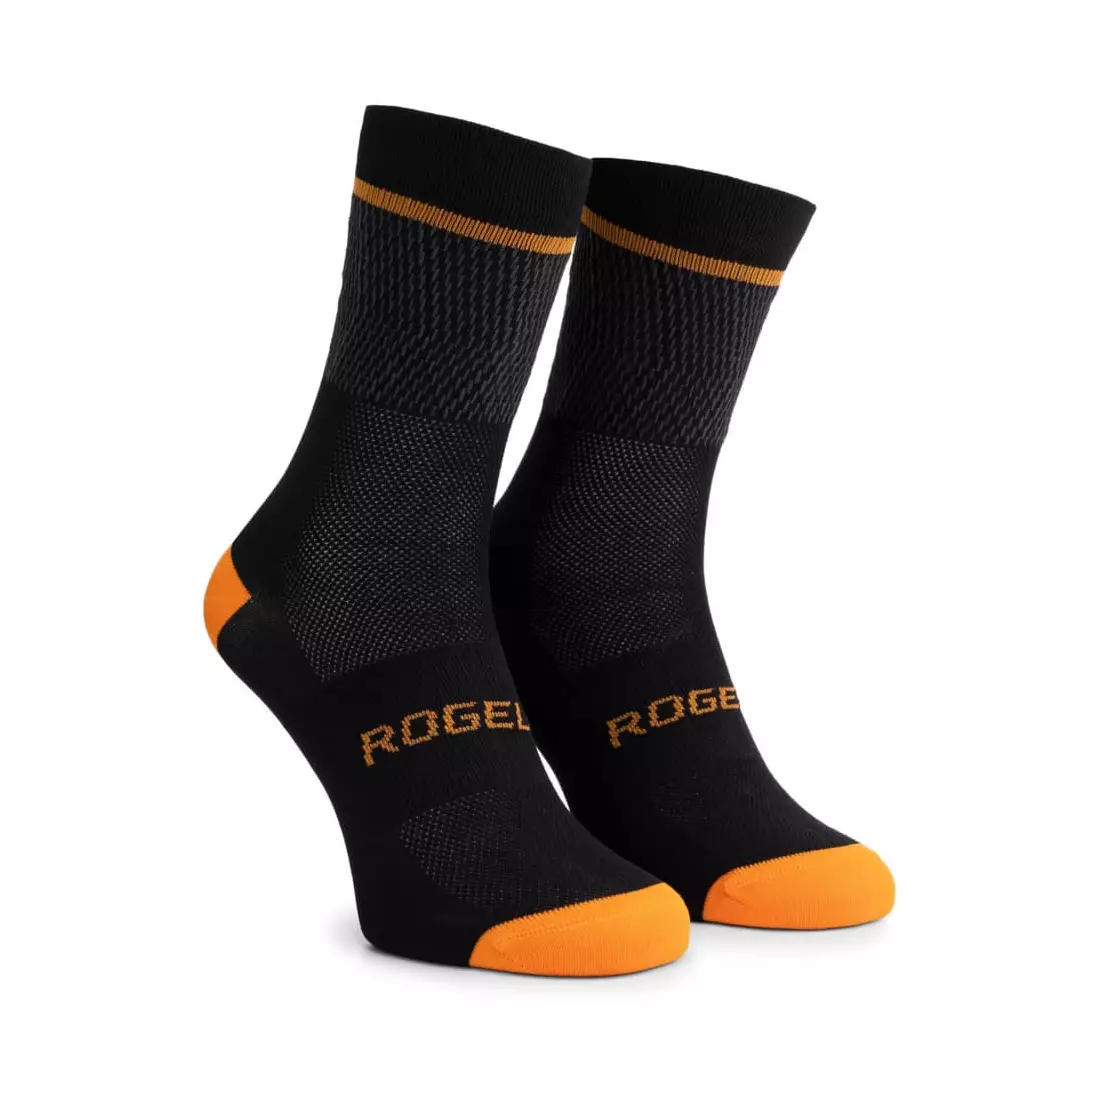 Rogelli HERO II cycling/sports socks, black and orange